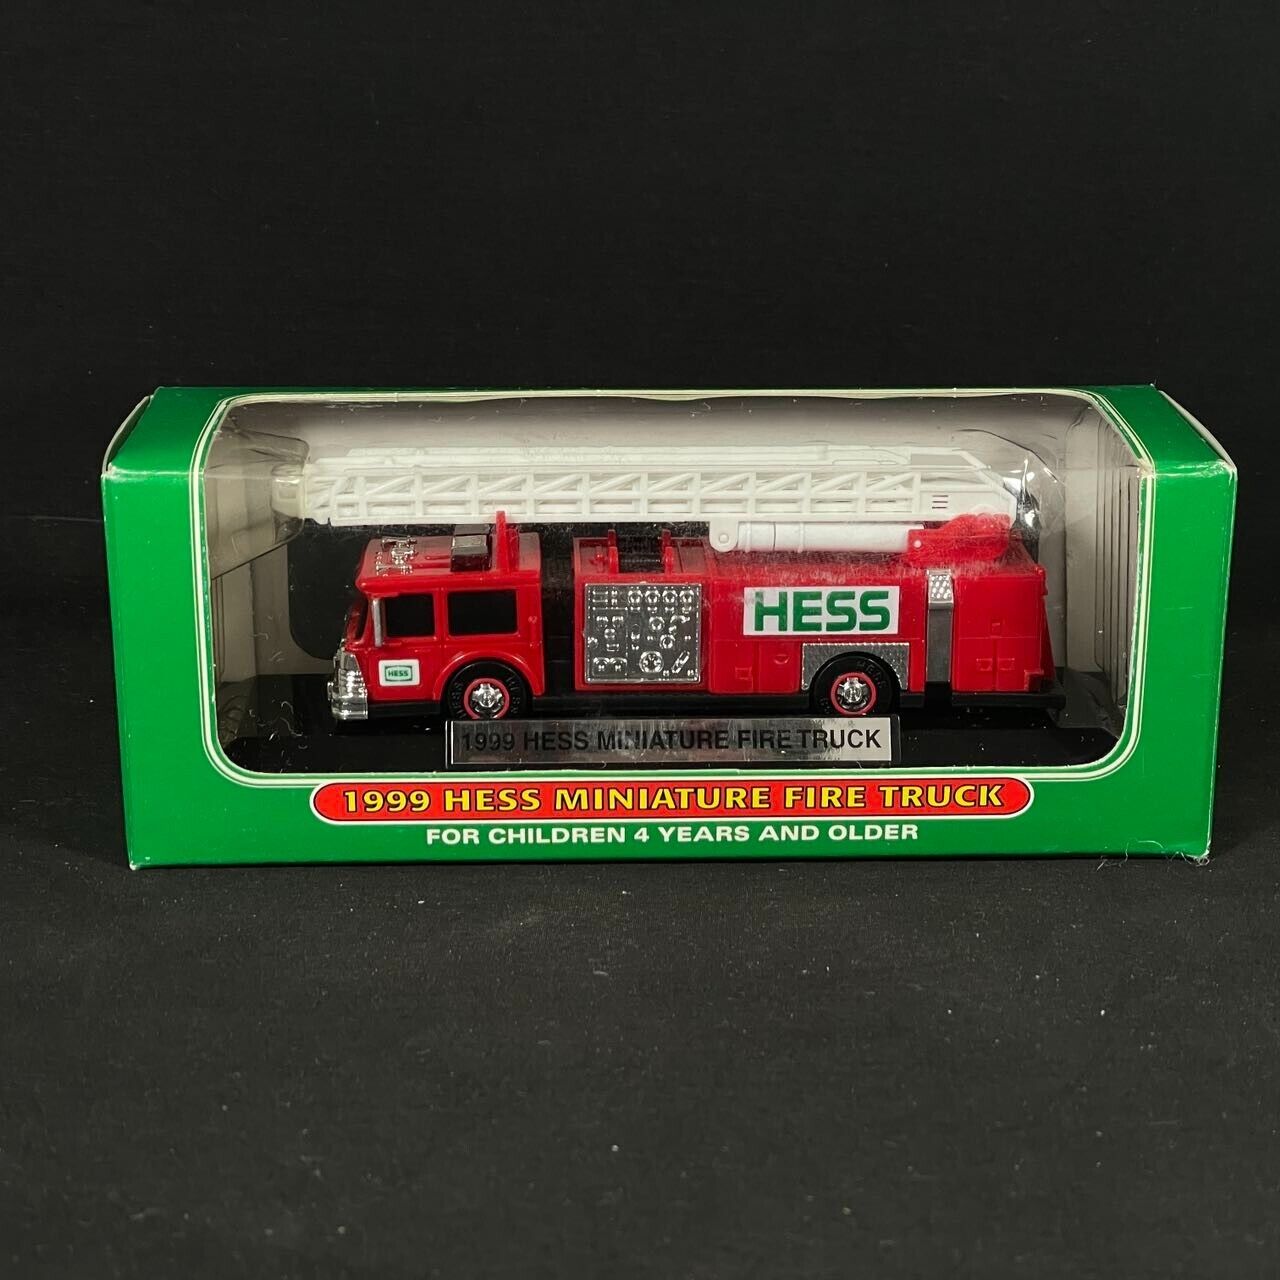 1999 Hess Miniature Mini Fire Truck - Brand New in Box